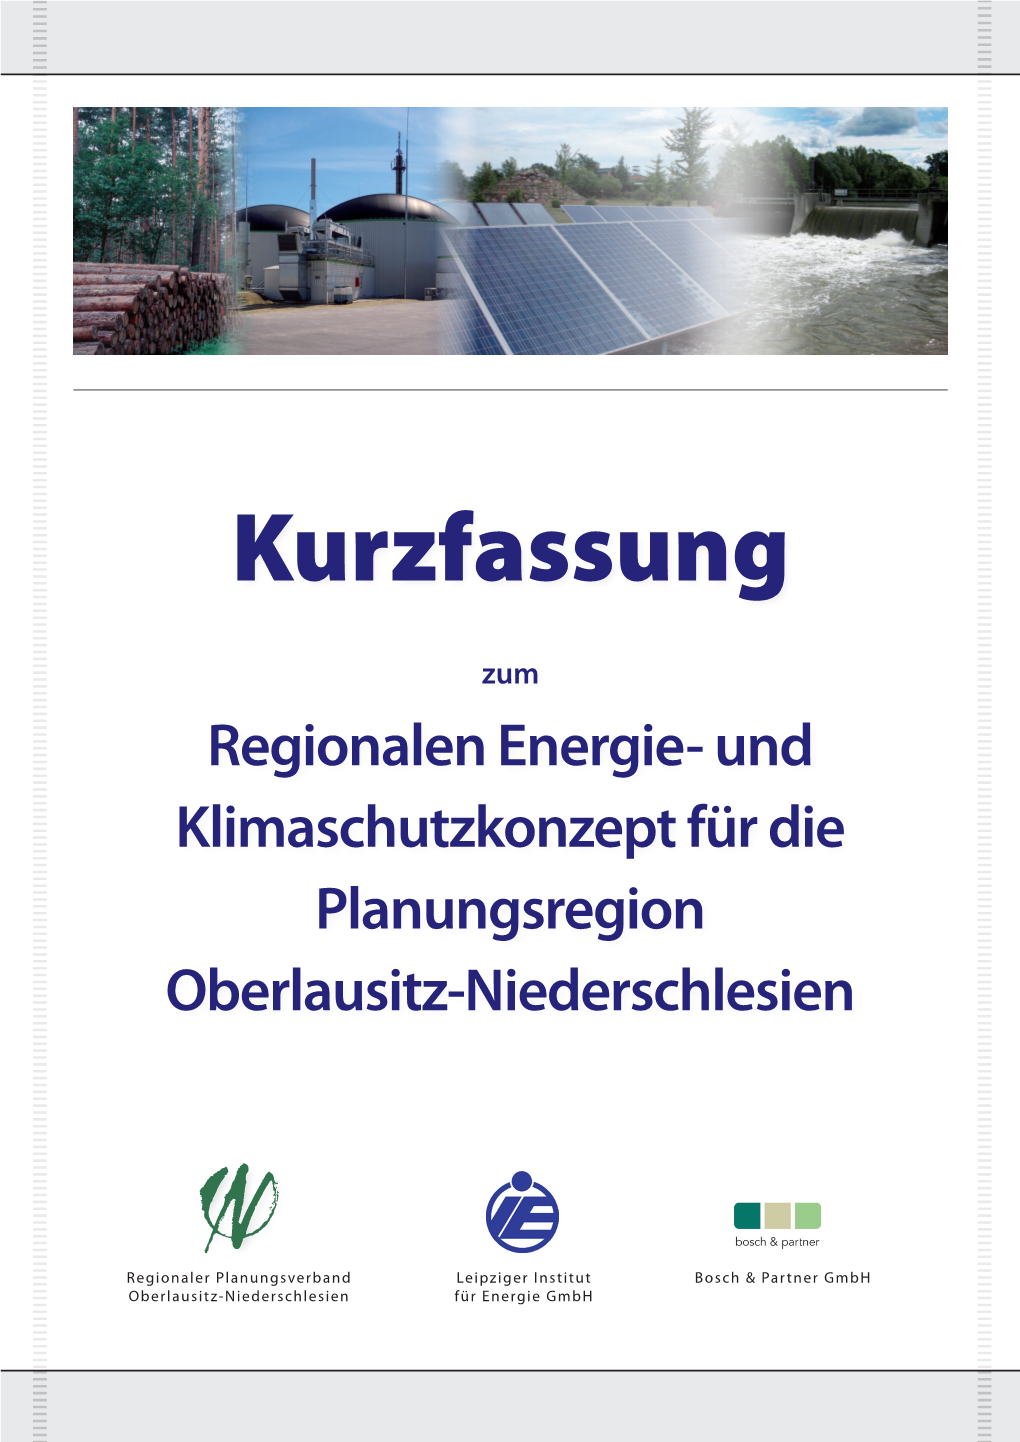 Regionales Energie- Und Klimaschutzkonzept Für Die Planungsregion Oberlausitz-Niederschlesien